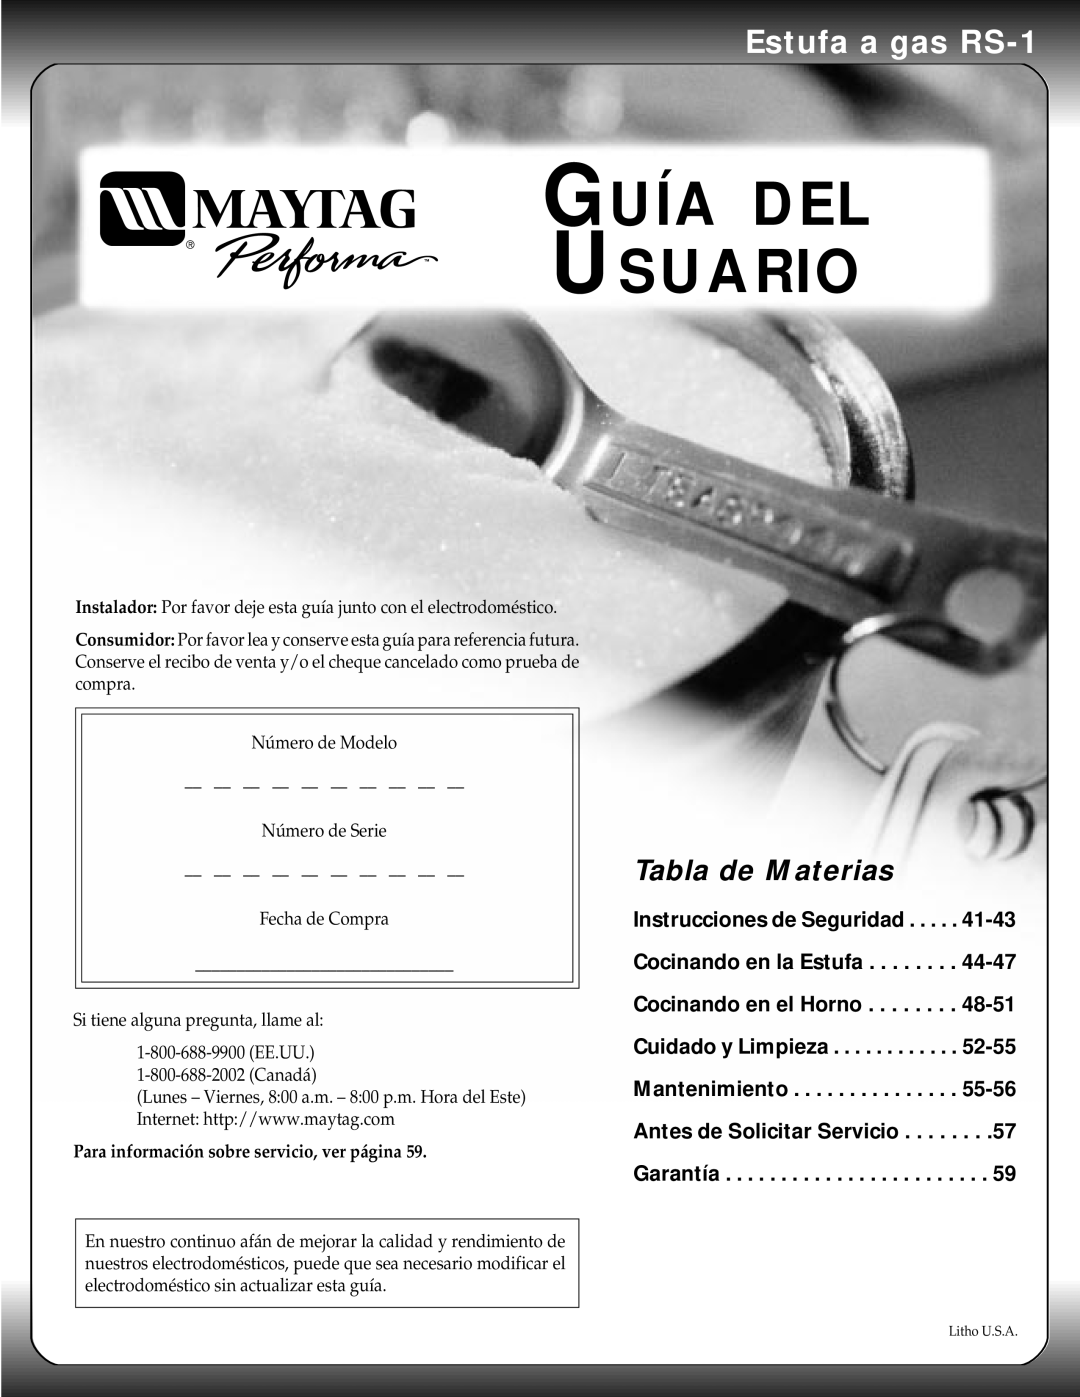 Maytag manual Guía Del Usuario, Estufa a gas RS-1, Tabla de Materias 